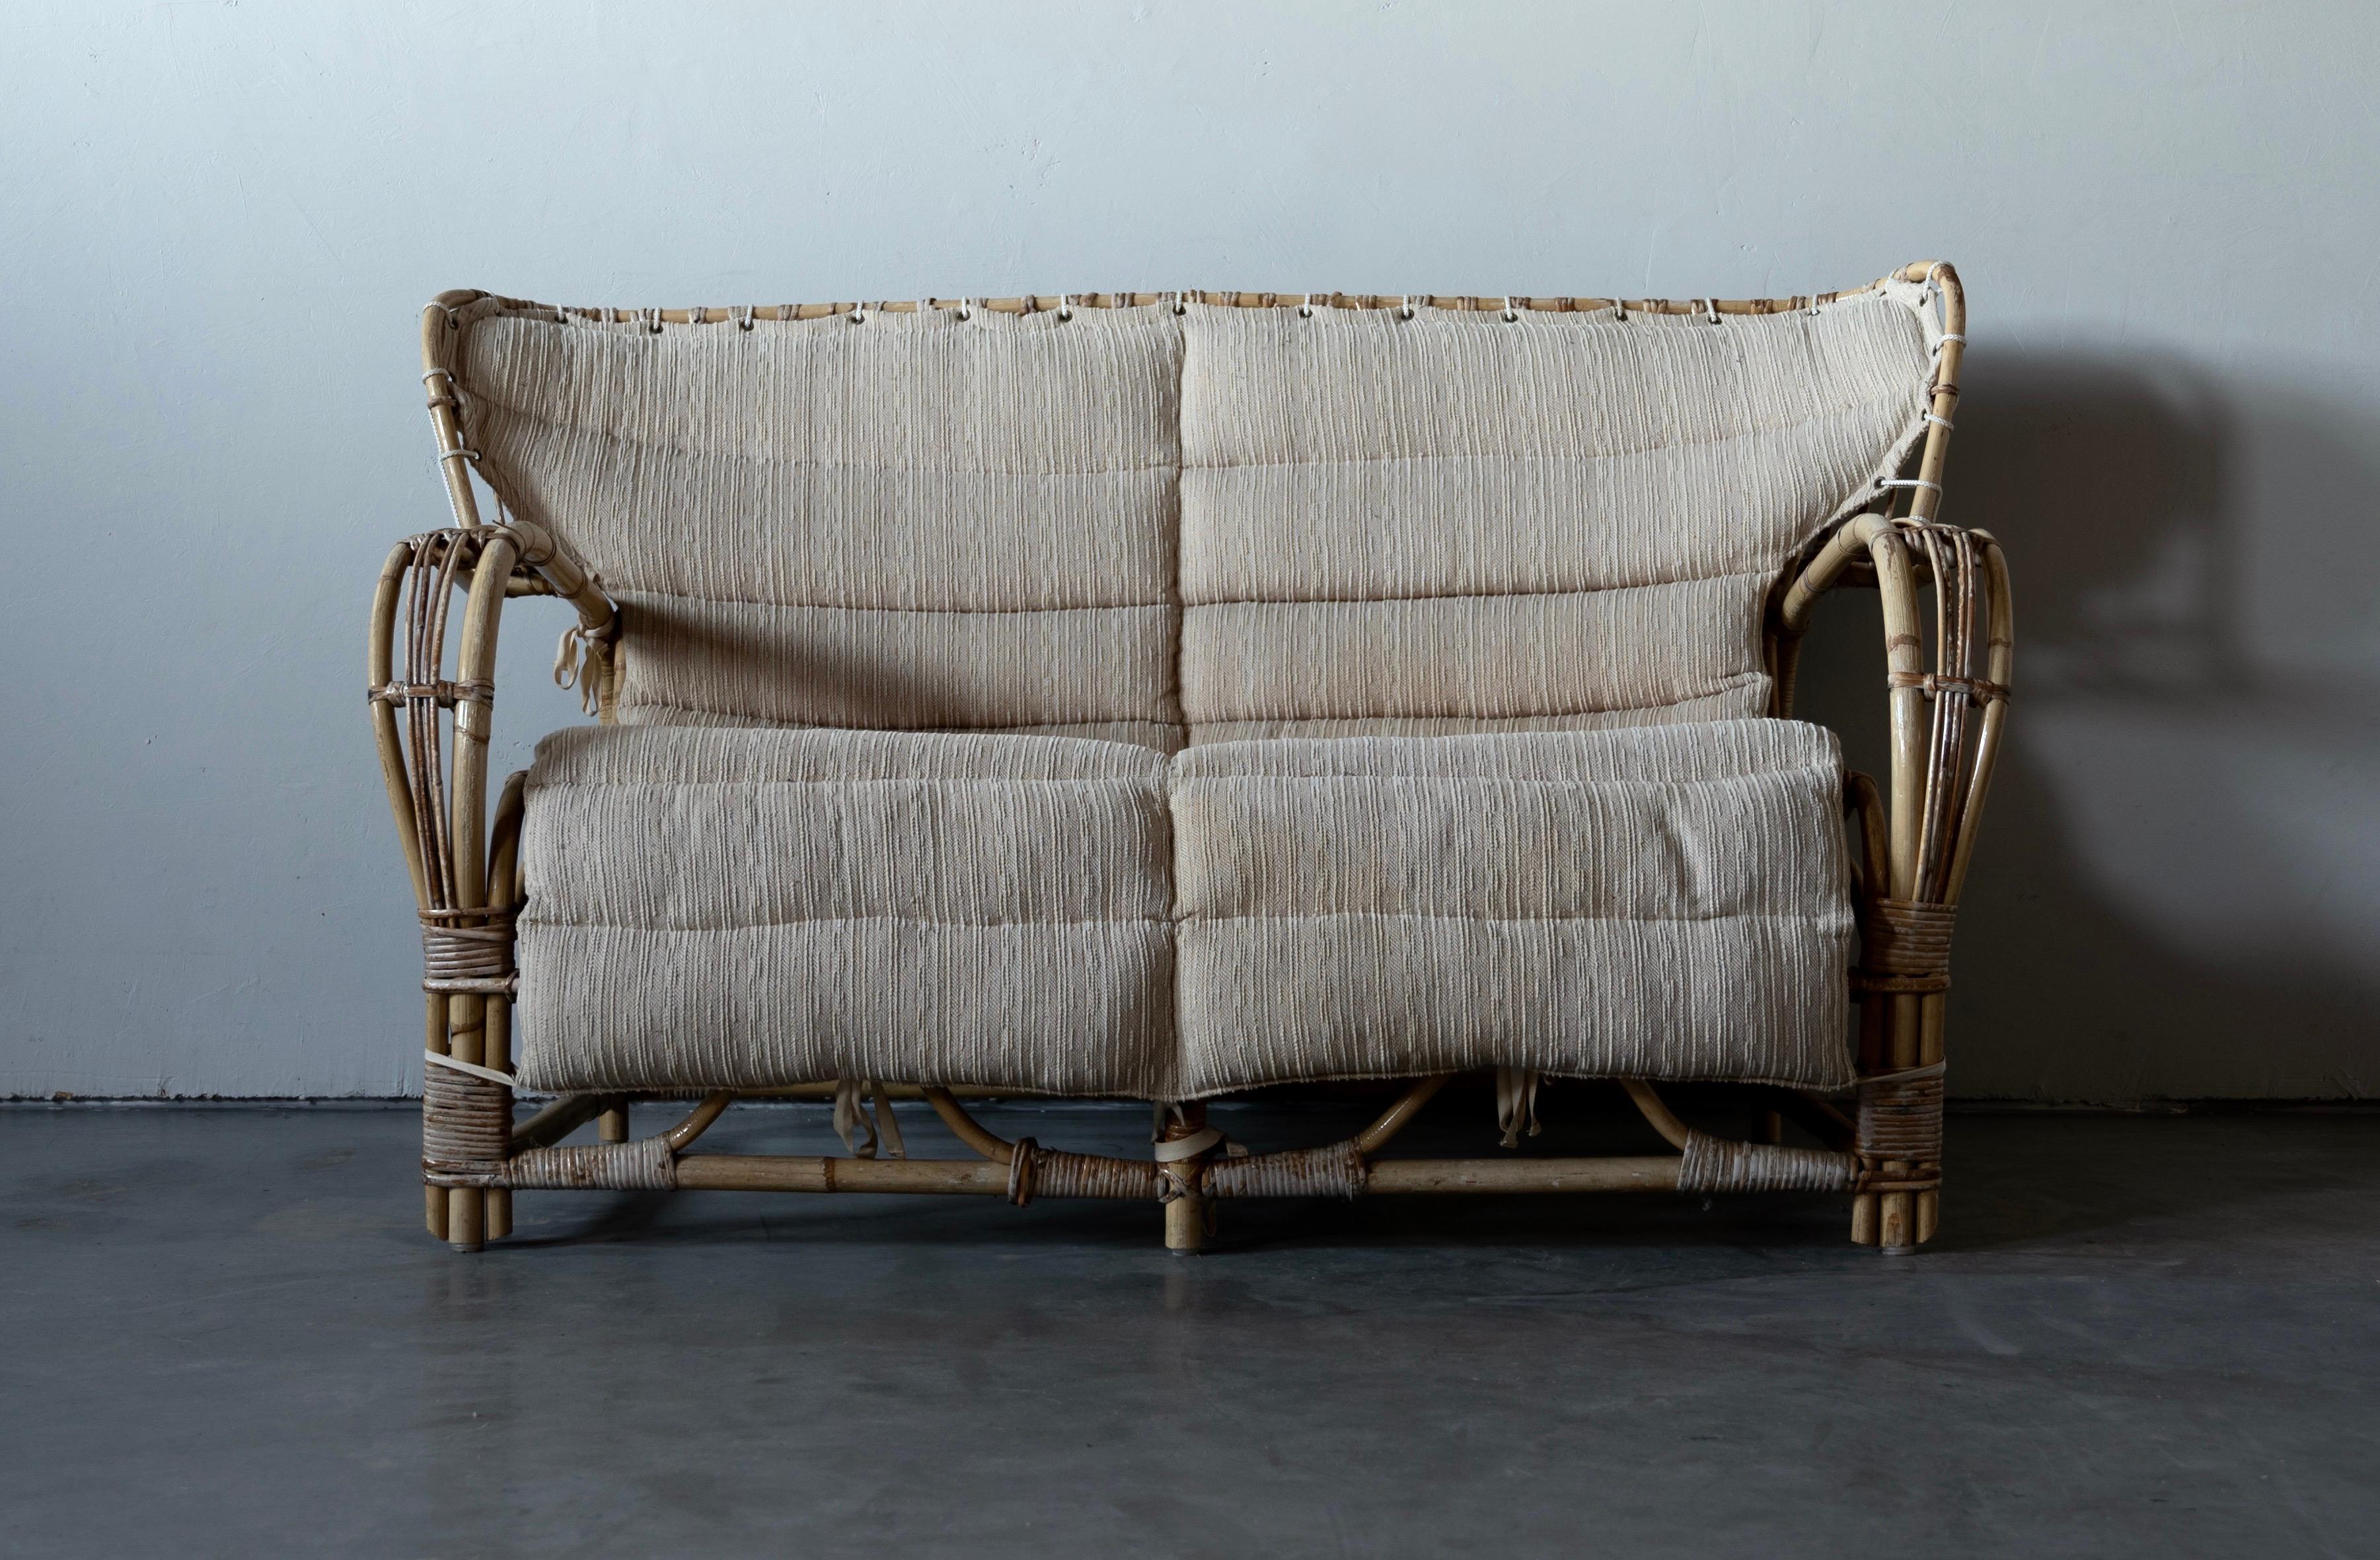 Ein Paar Liegestühle. Das Design wird Viggo Boesen zugeschrieben. Vermutlich hergestellt von E. V. A. Nissen & Co., Dänemark. ca. 1940-1950er Jahre.

Aus geformtem Bambus mit Details aus Rattan und Schilfrohr.

Sitzhöhe gemessen vom höchsten Punkt